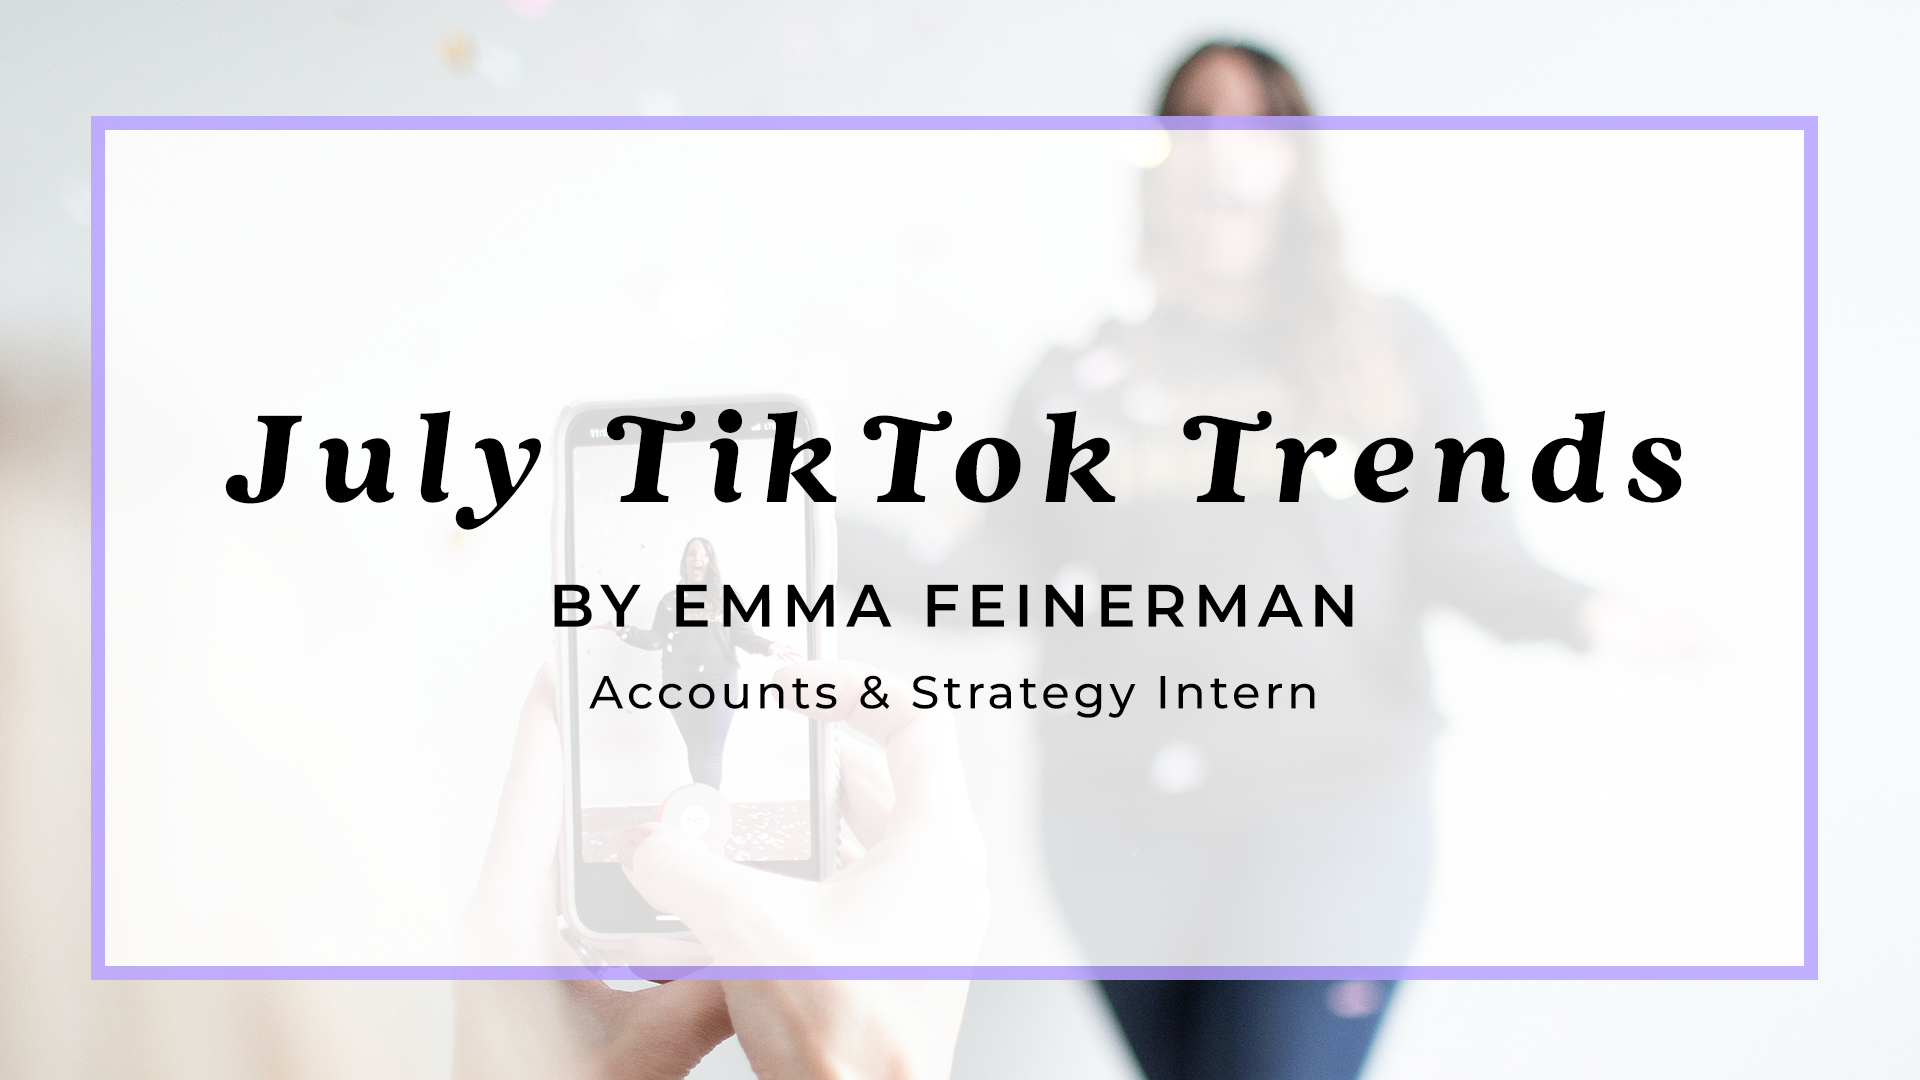 TikTok-Trends-Emma-Feinerman-Socialfly-July